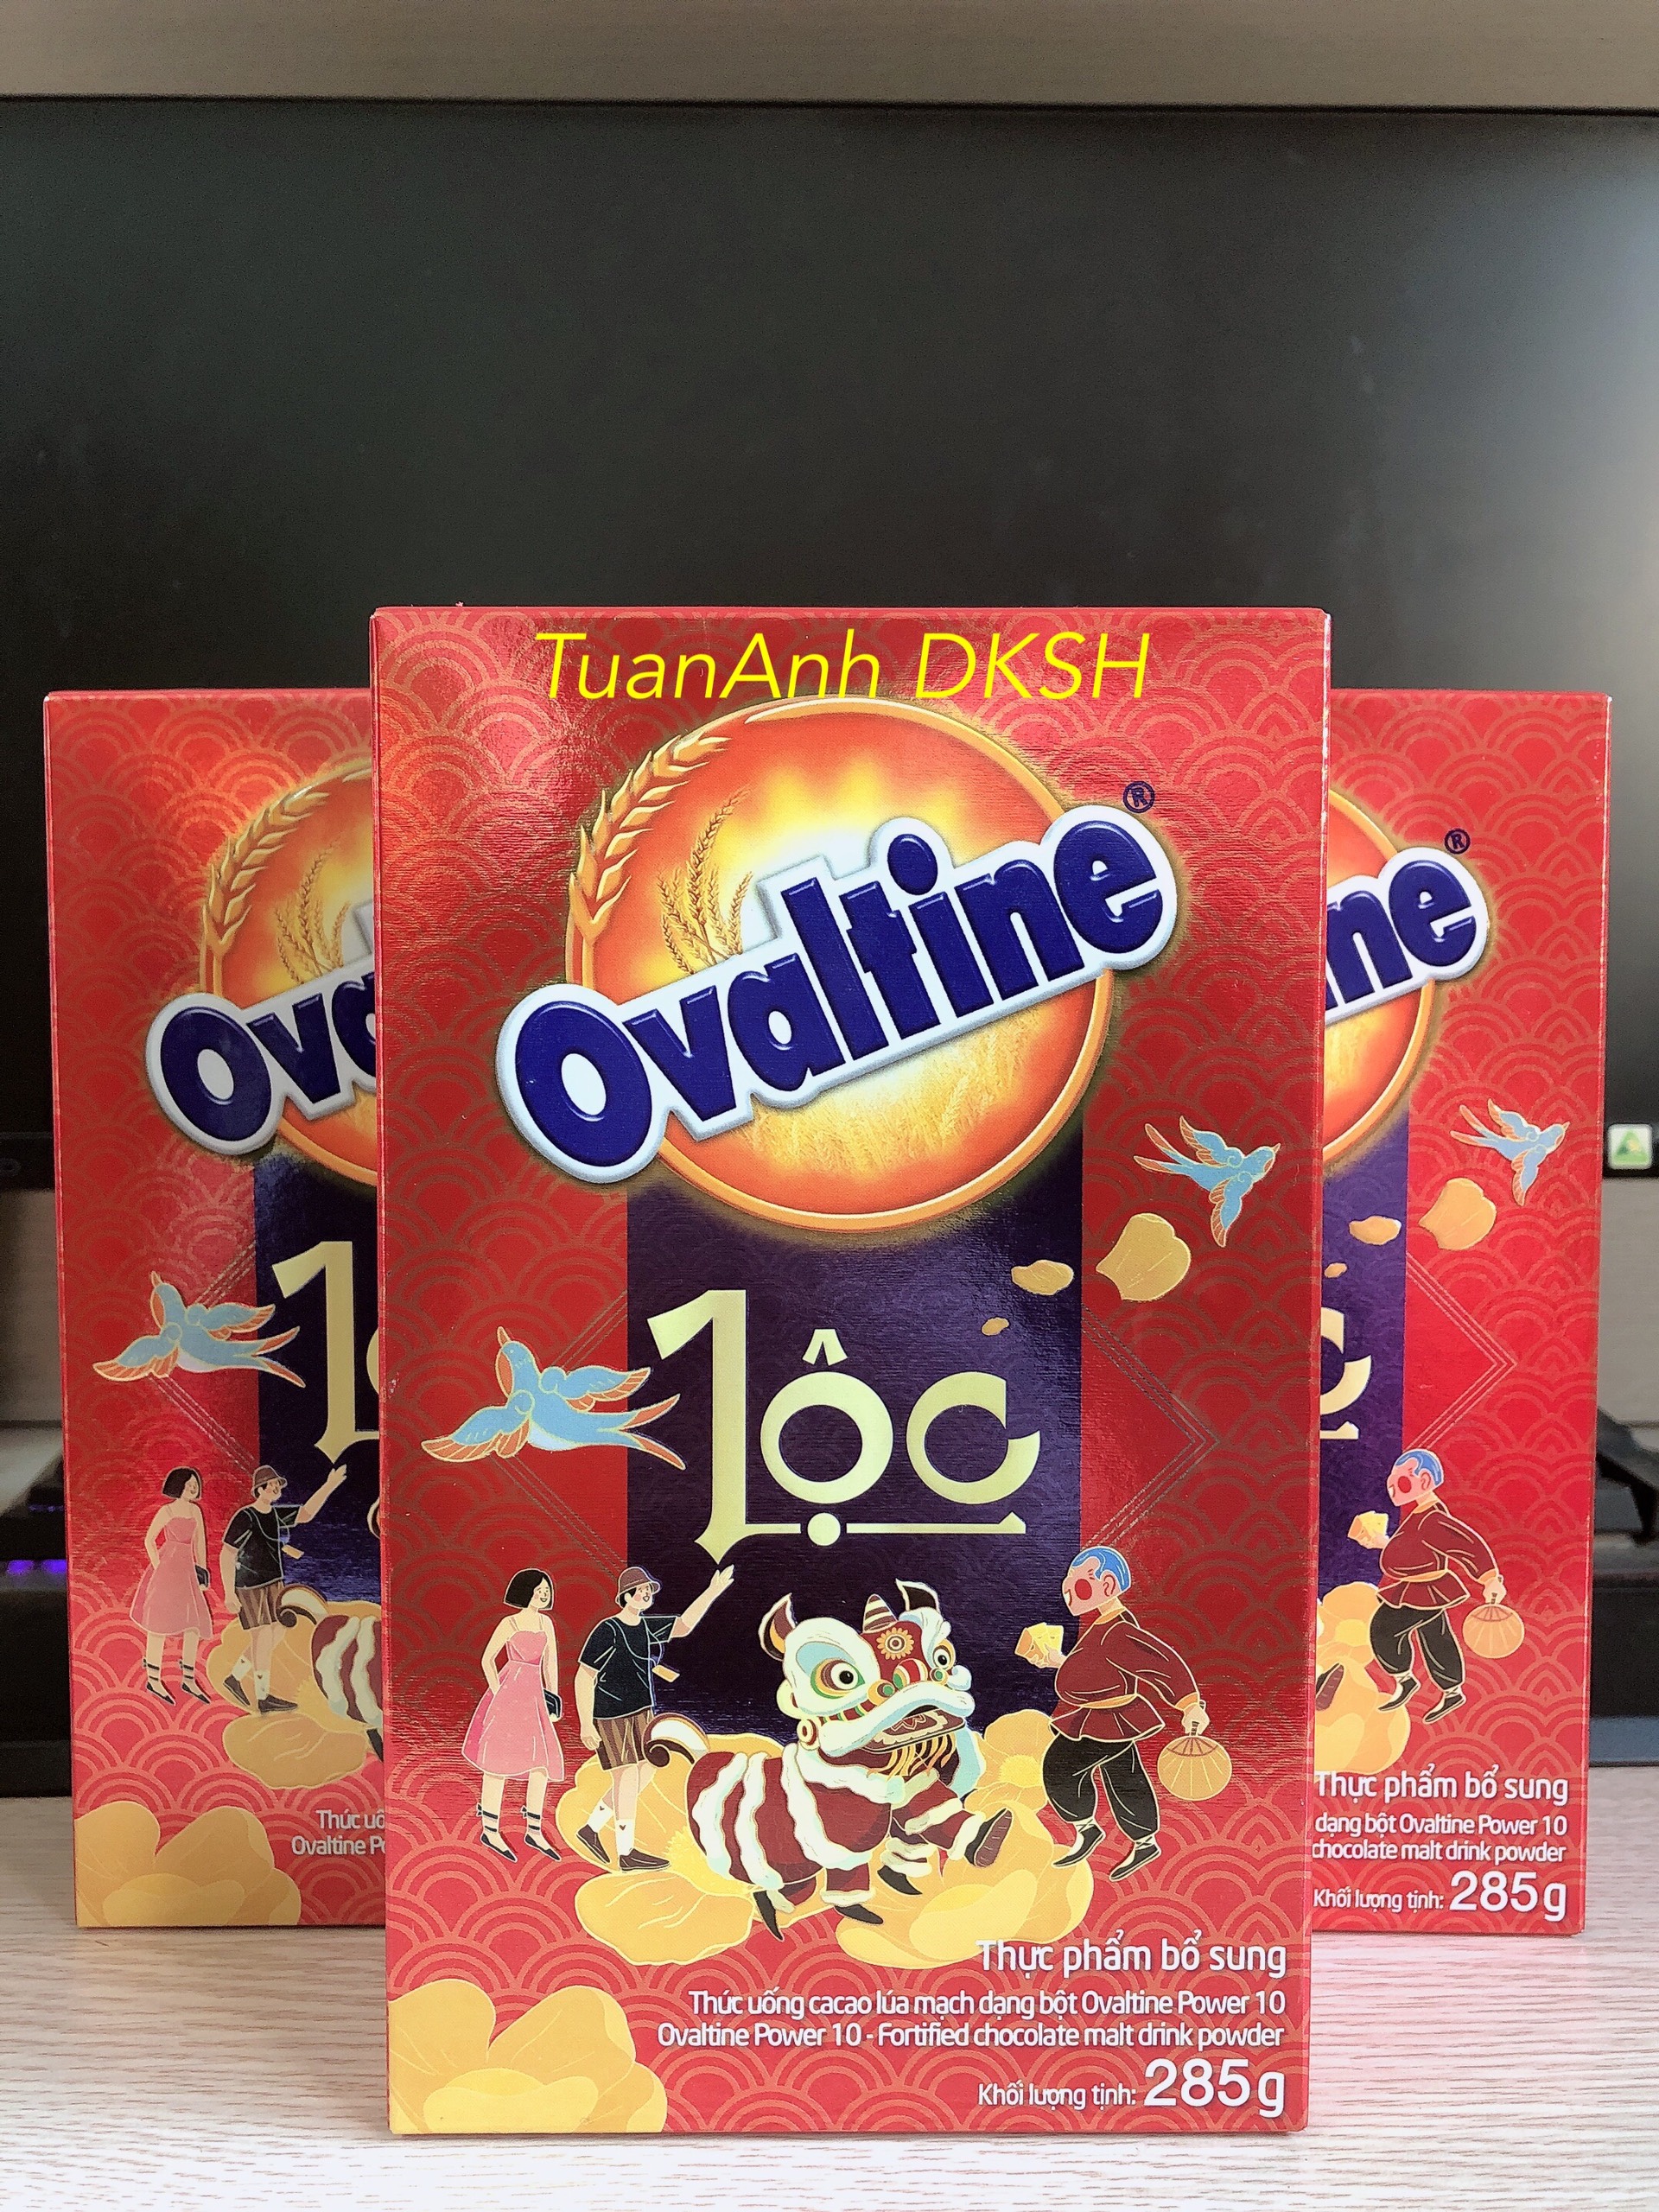 Thức uống lúa mạch hương vị sô-cô-la Ovaltine bột hộp giấy 285g